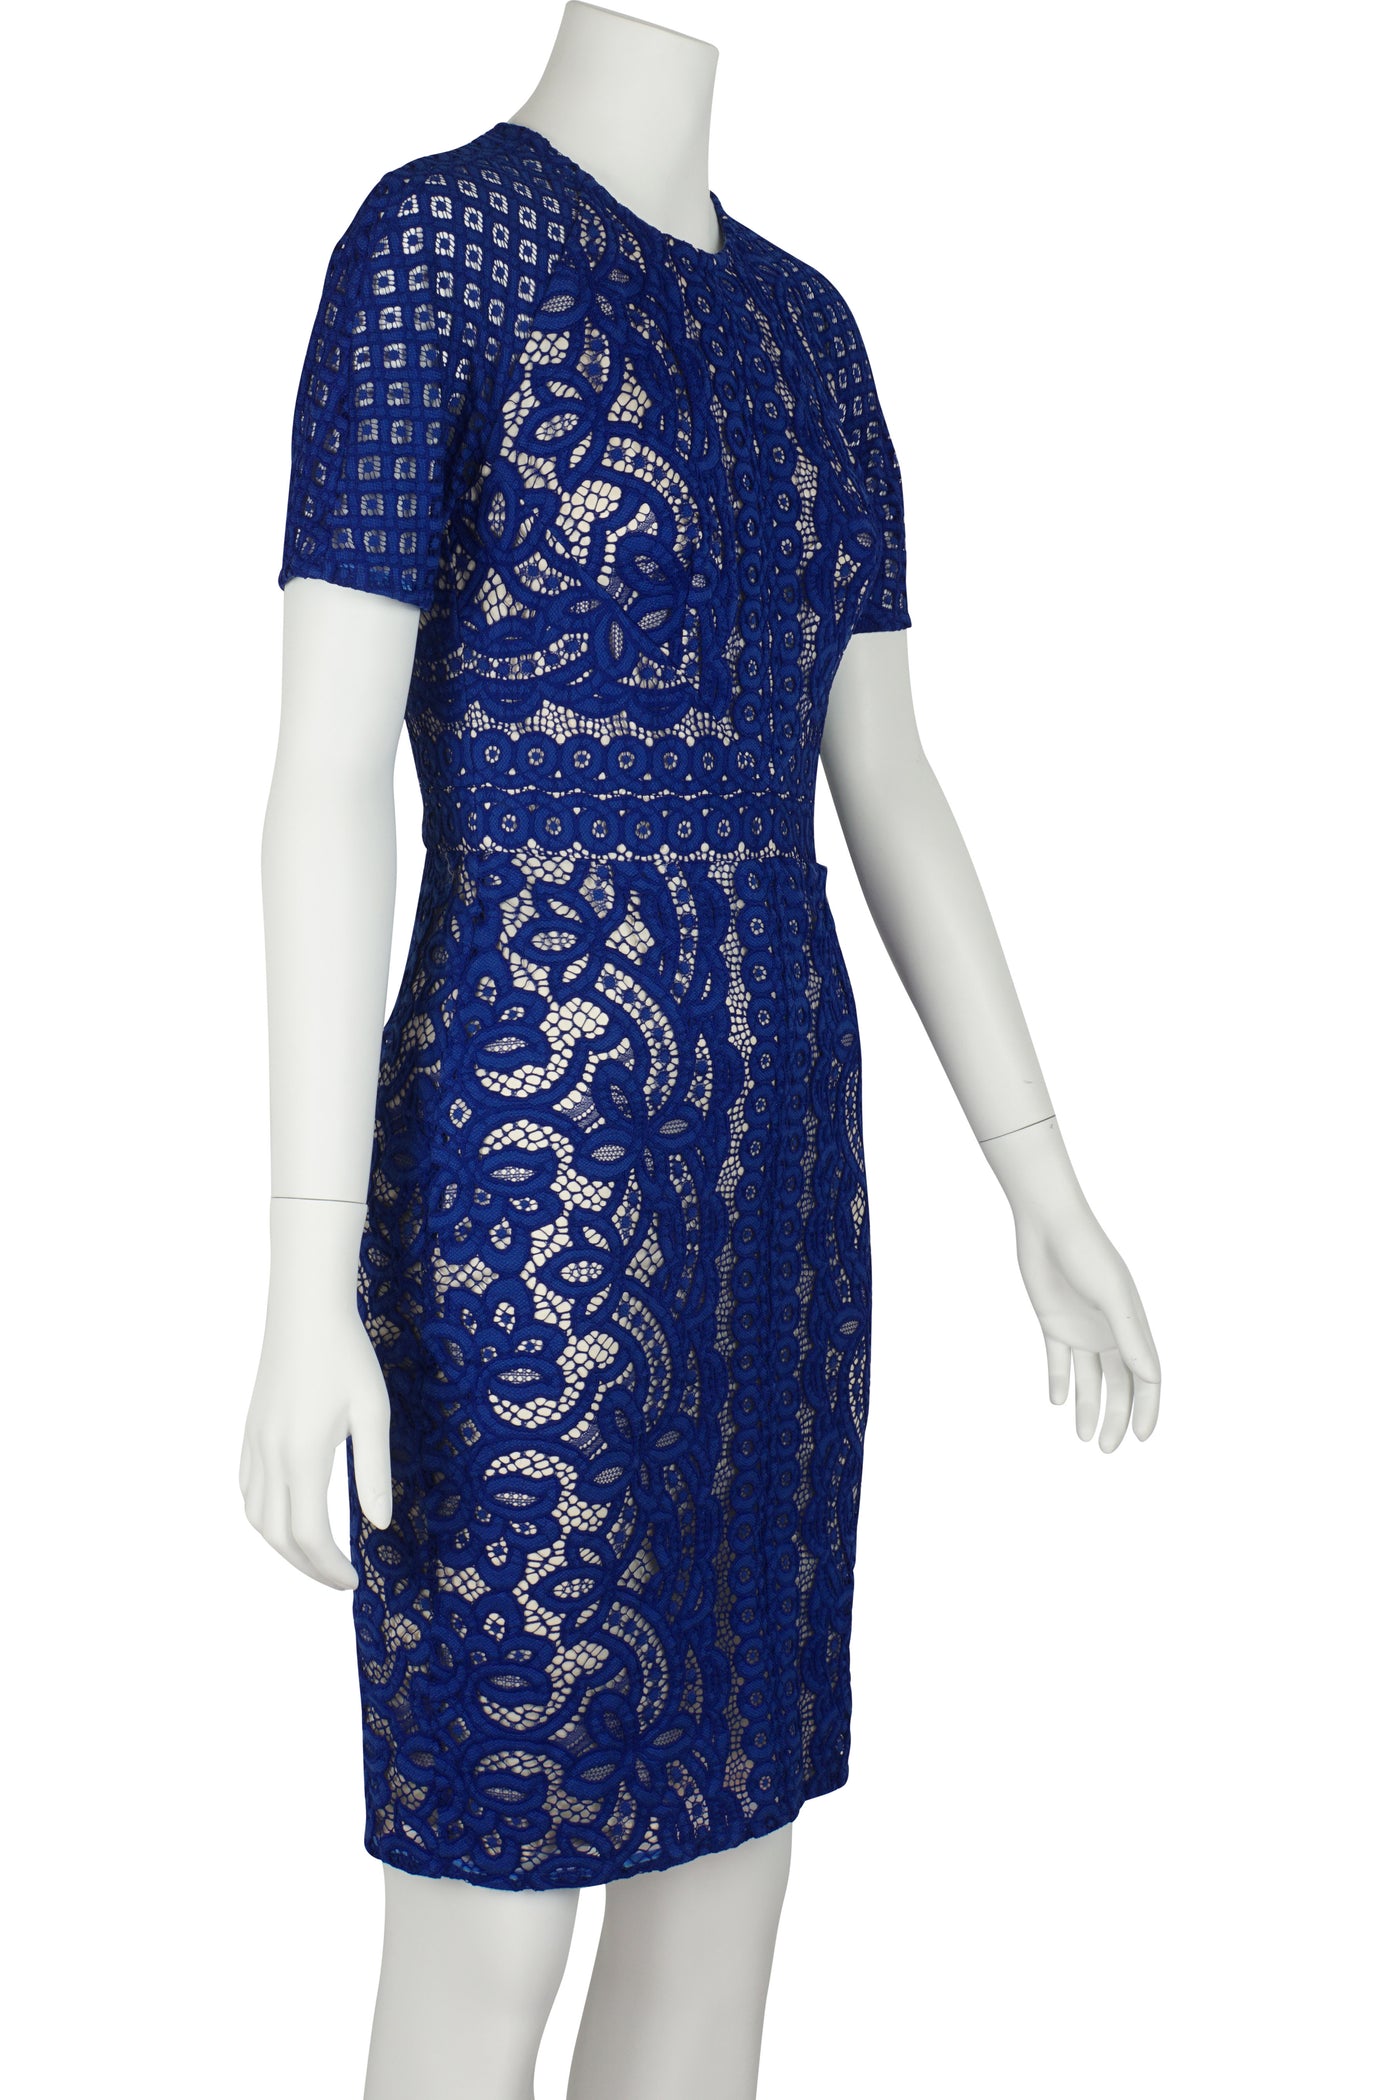 Poppy blue lace dress